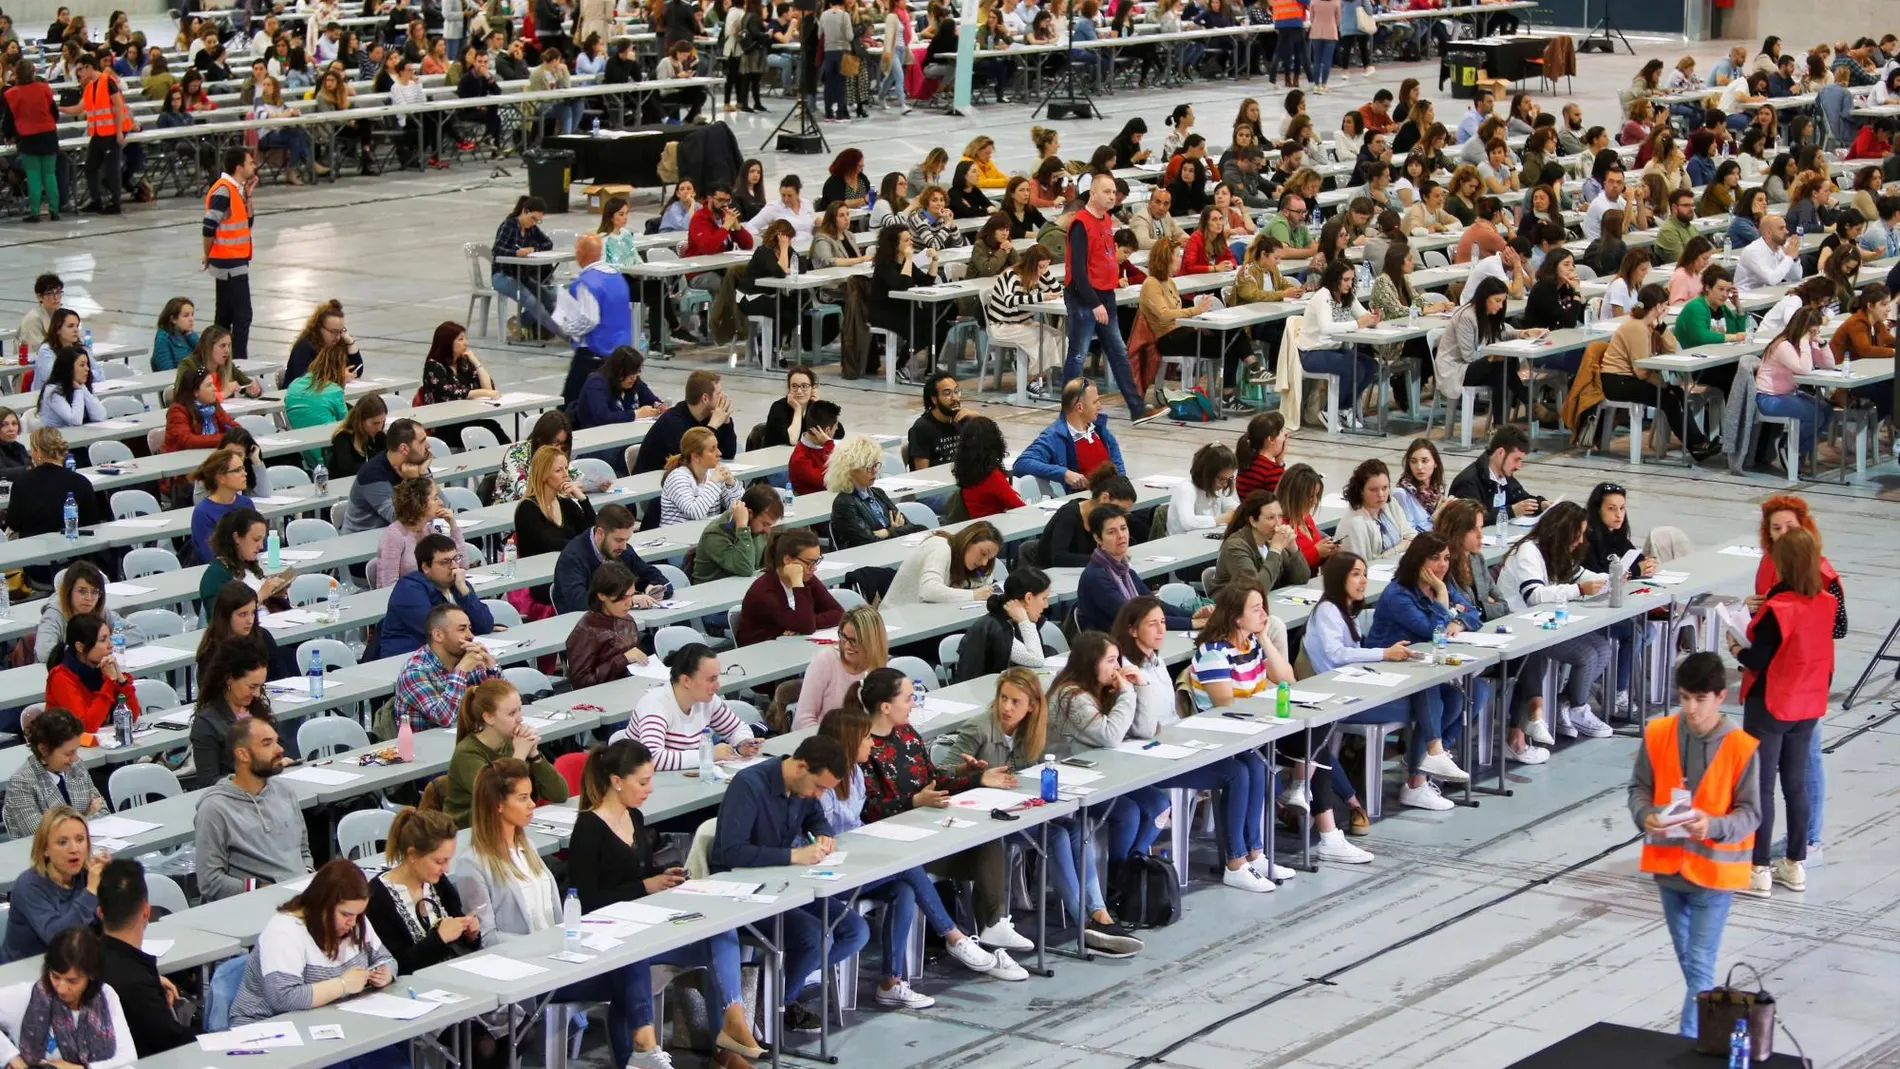 Los estudiantes de León (36%) son los que se sienten más atraídos por el empleo público. Los madrileños (16%), los que menos